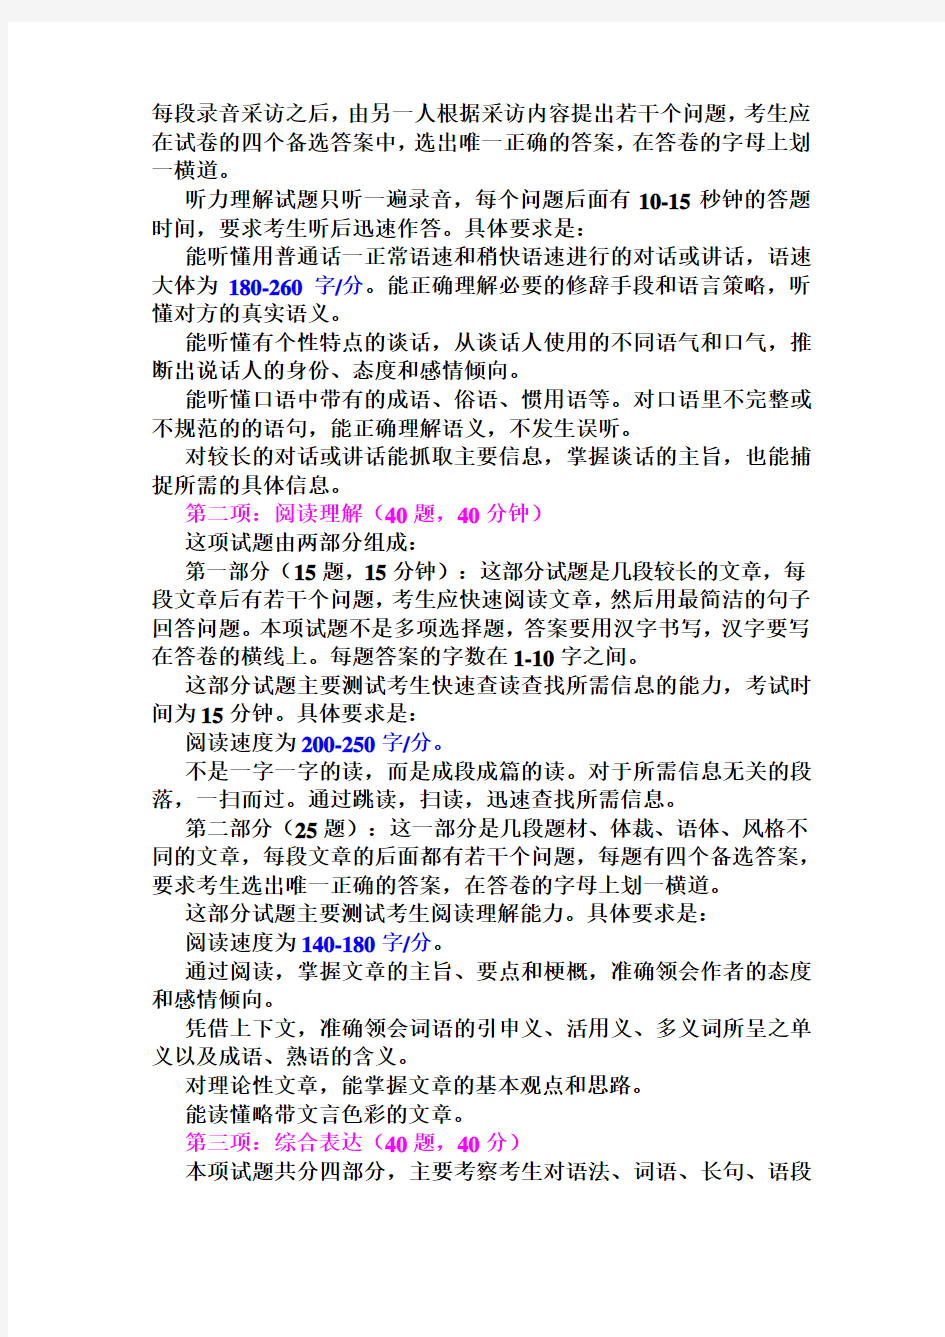 1.汉语水平考试(HSK高等)大纲